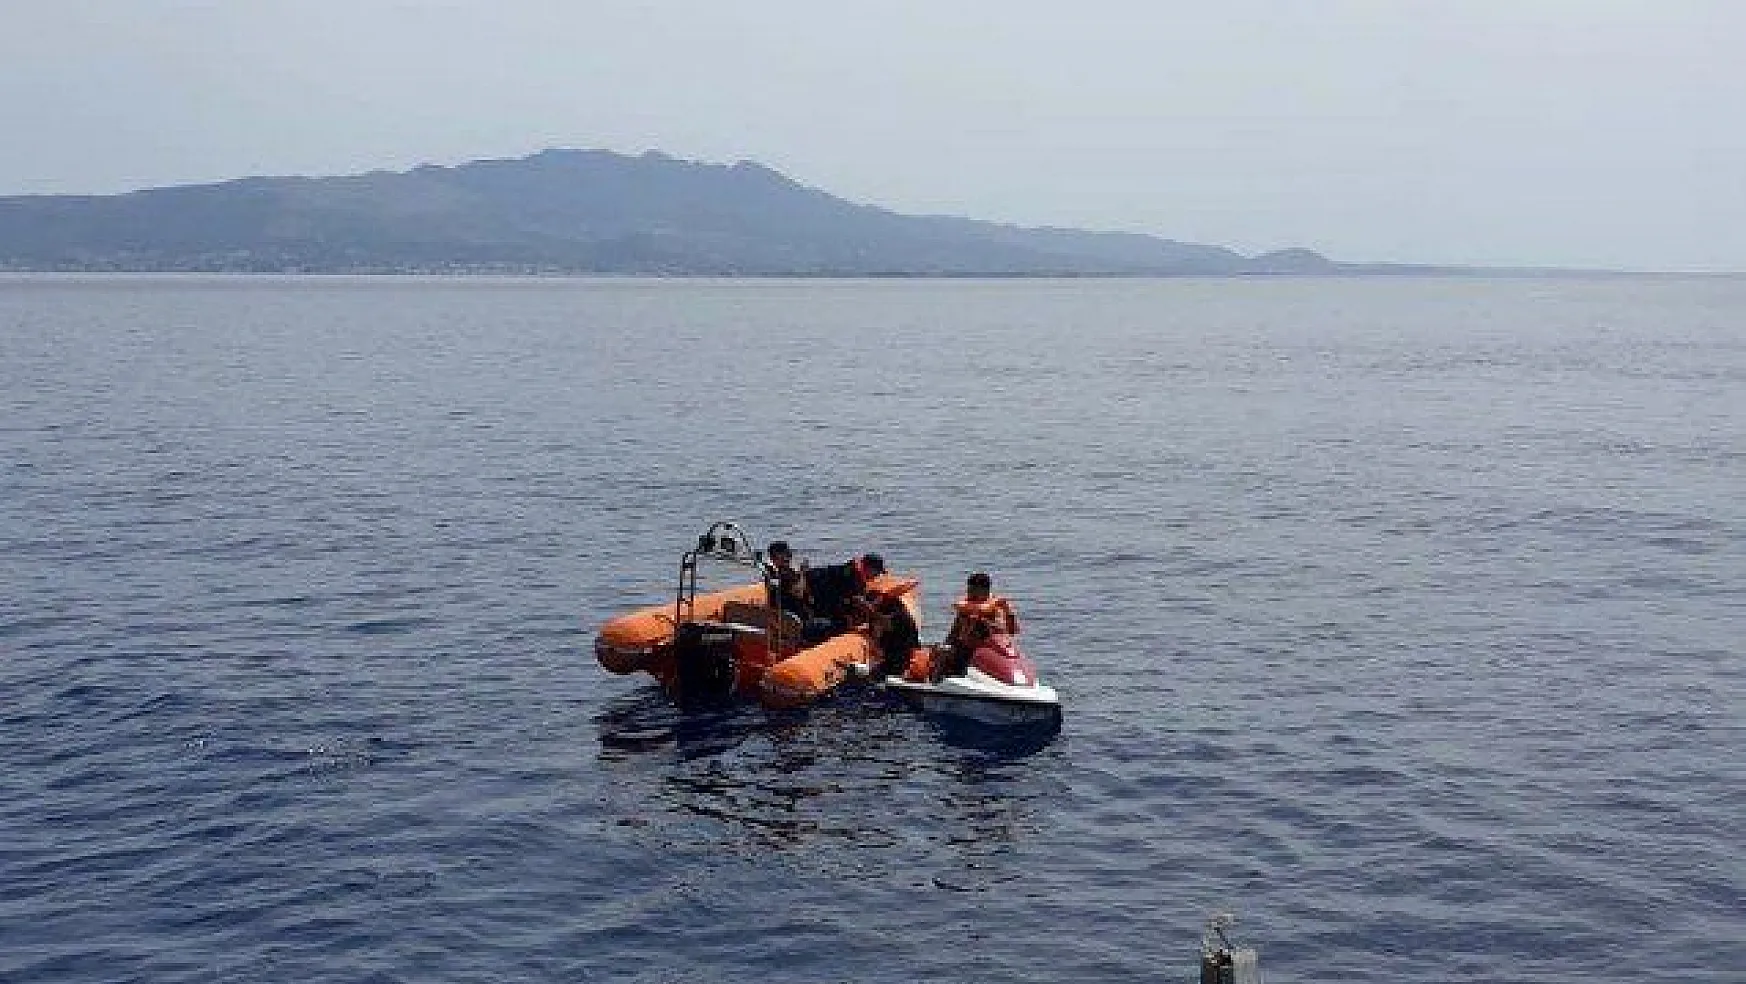 Jet-ski'ye tutunarak Yunan adalarına kaçmaya çalışan Filistinli kaçaklar yakalandı